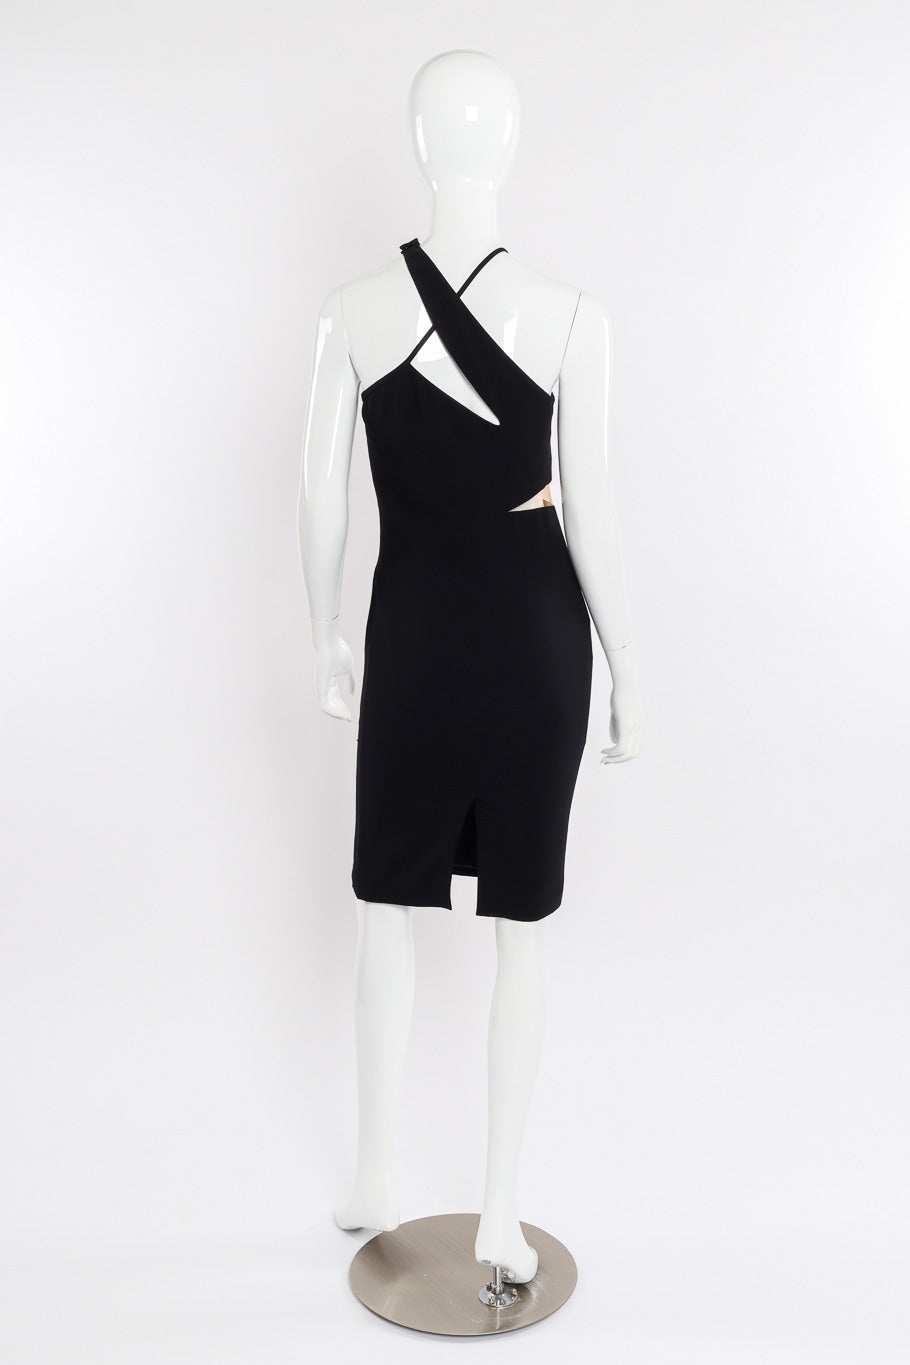 Versace Asymmetric Cut-Out Dress back view on mannequin @Recessla